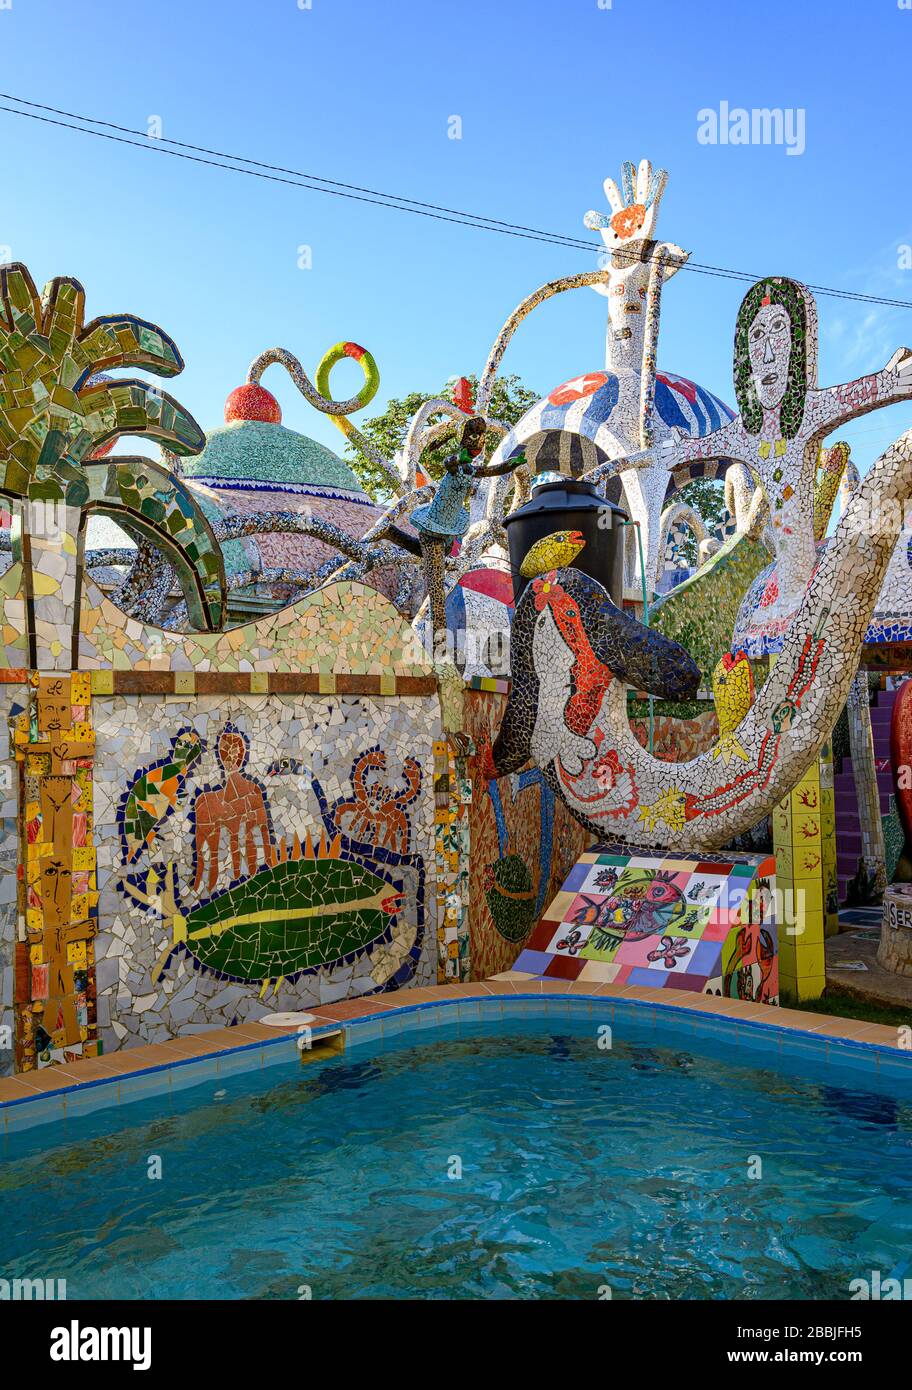 Fusterlandia, installazioni di arte pubblica dell'artista locale José Fuster, con mosaici colorati e stravaganti, Playa de Jaimanitas, Havana, Cuba Foto Stock